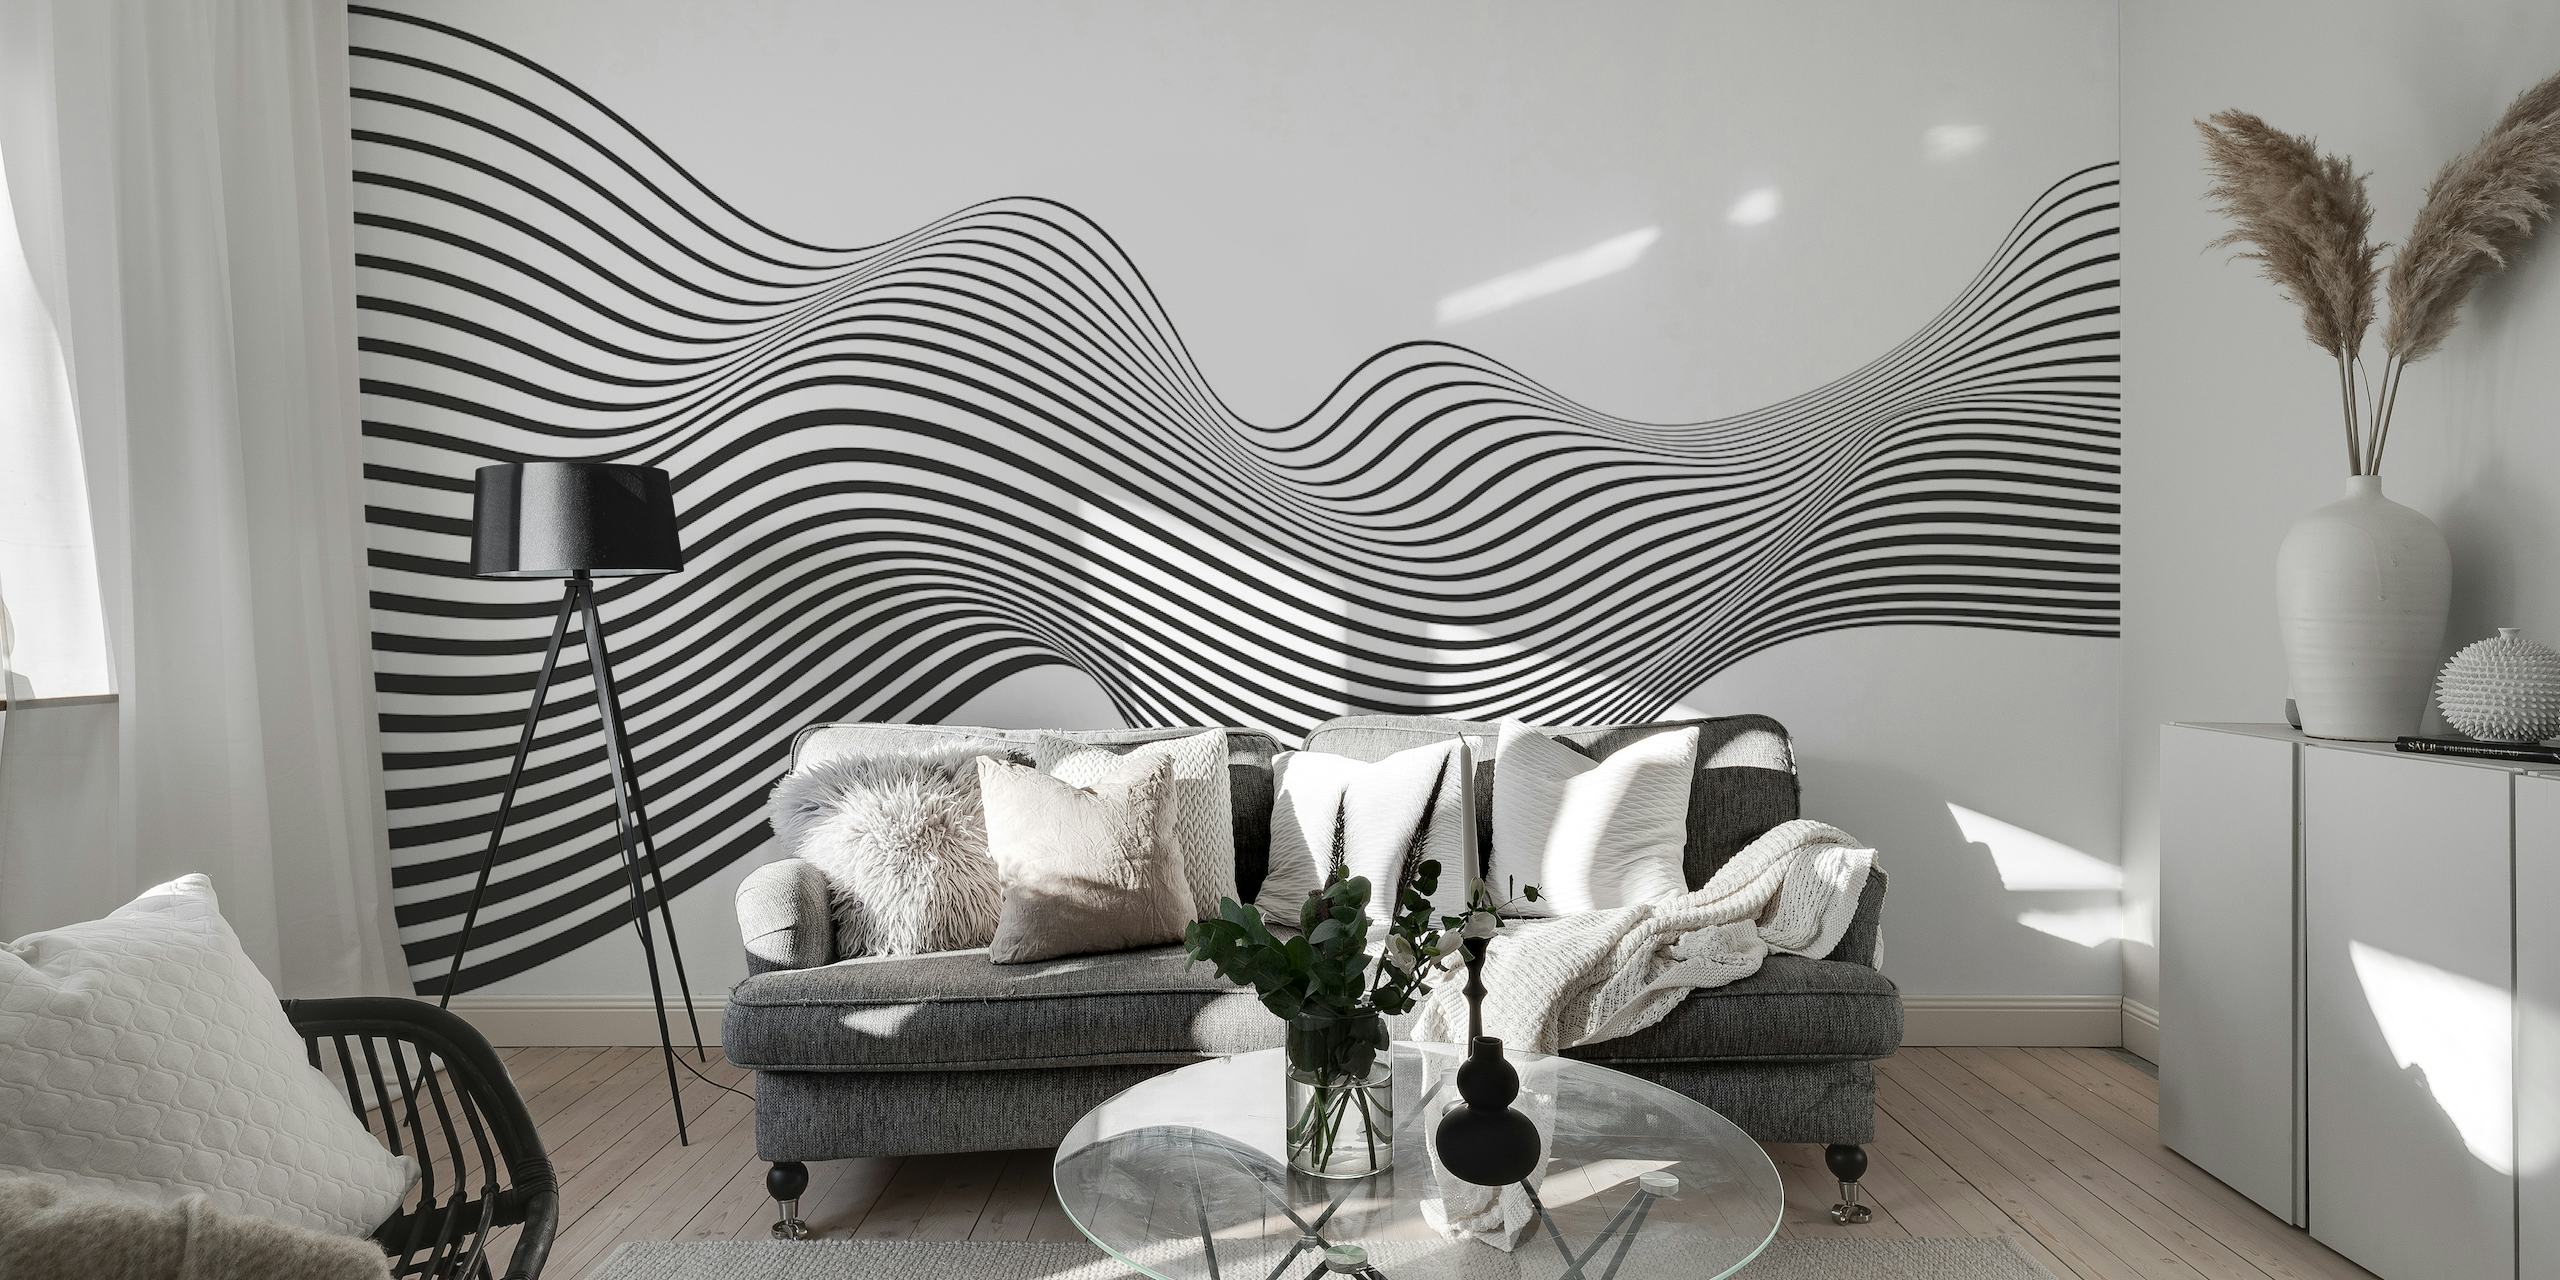 Fotomural vinílico de parede elegante com padrão de onda preto e branco para um interior moderno